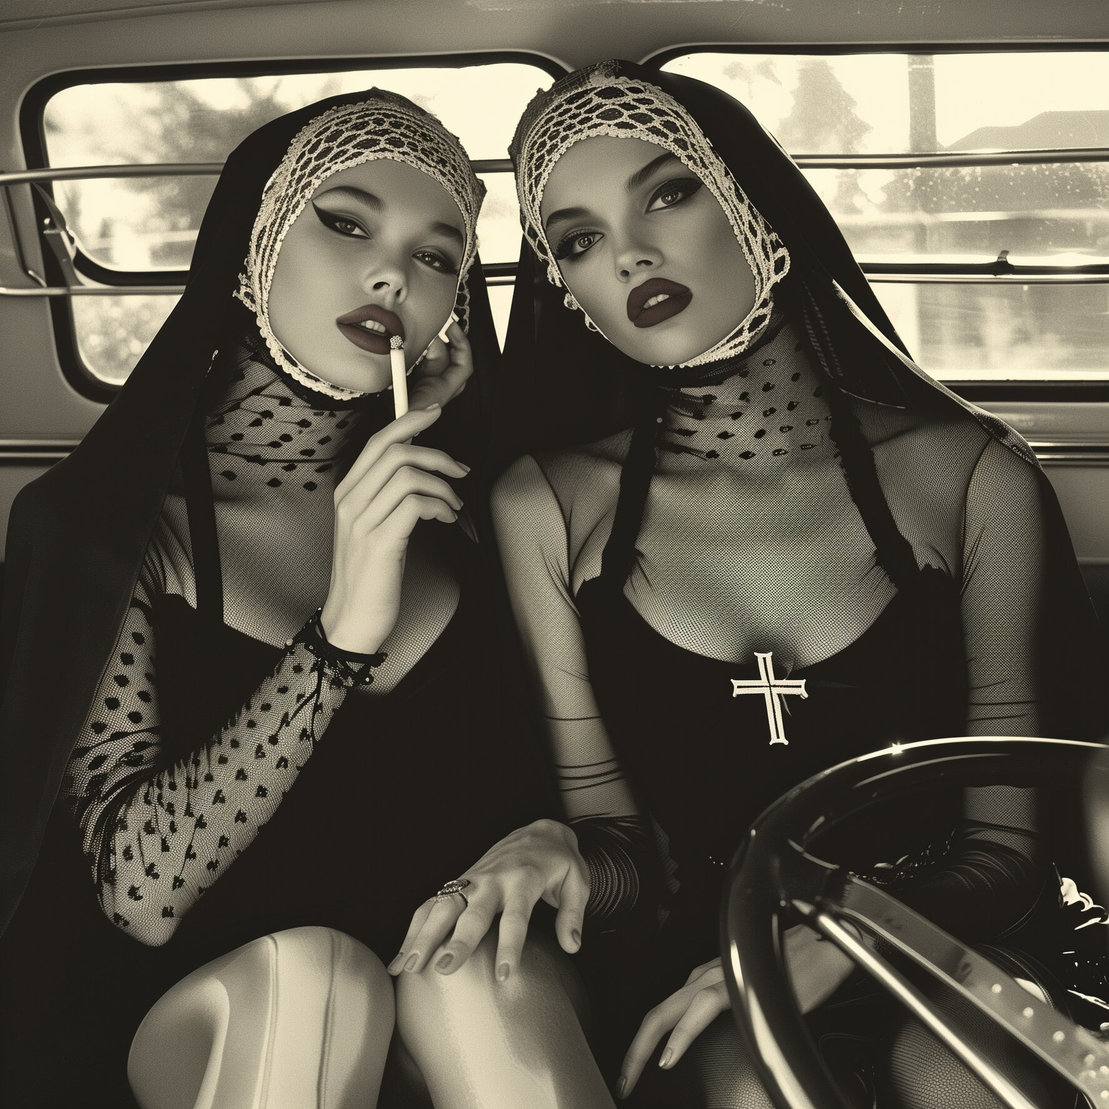 Smokings nuns II